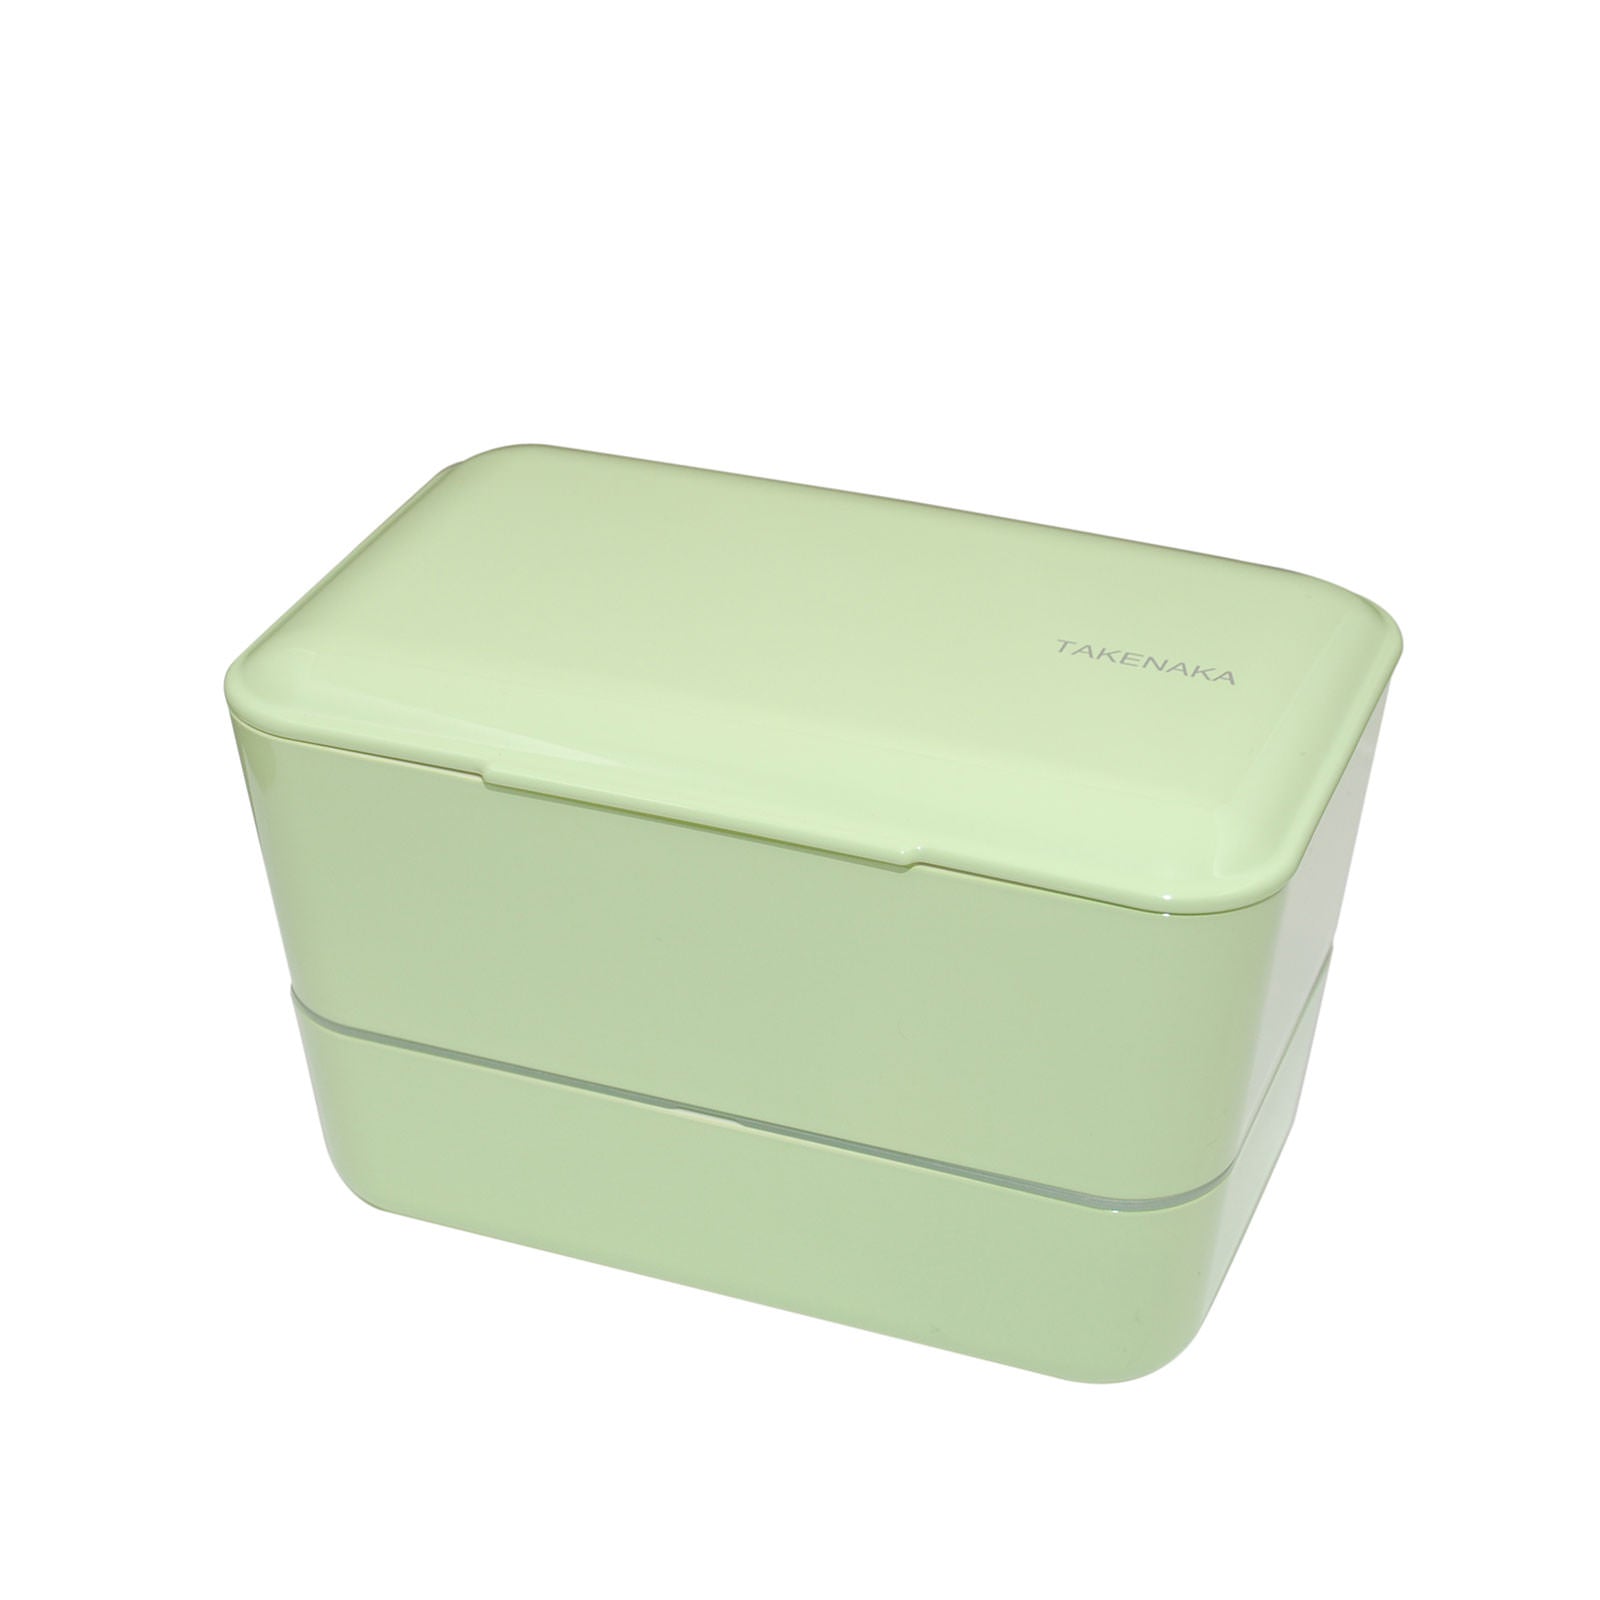 Poketo x Takenaka: Pebbles Bento Box – ICA Retail Store